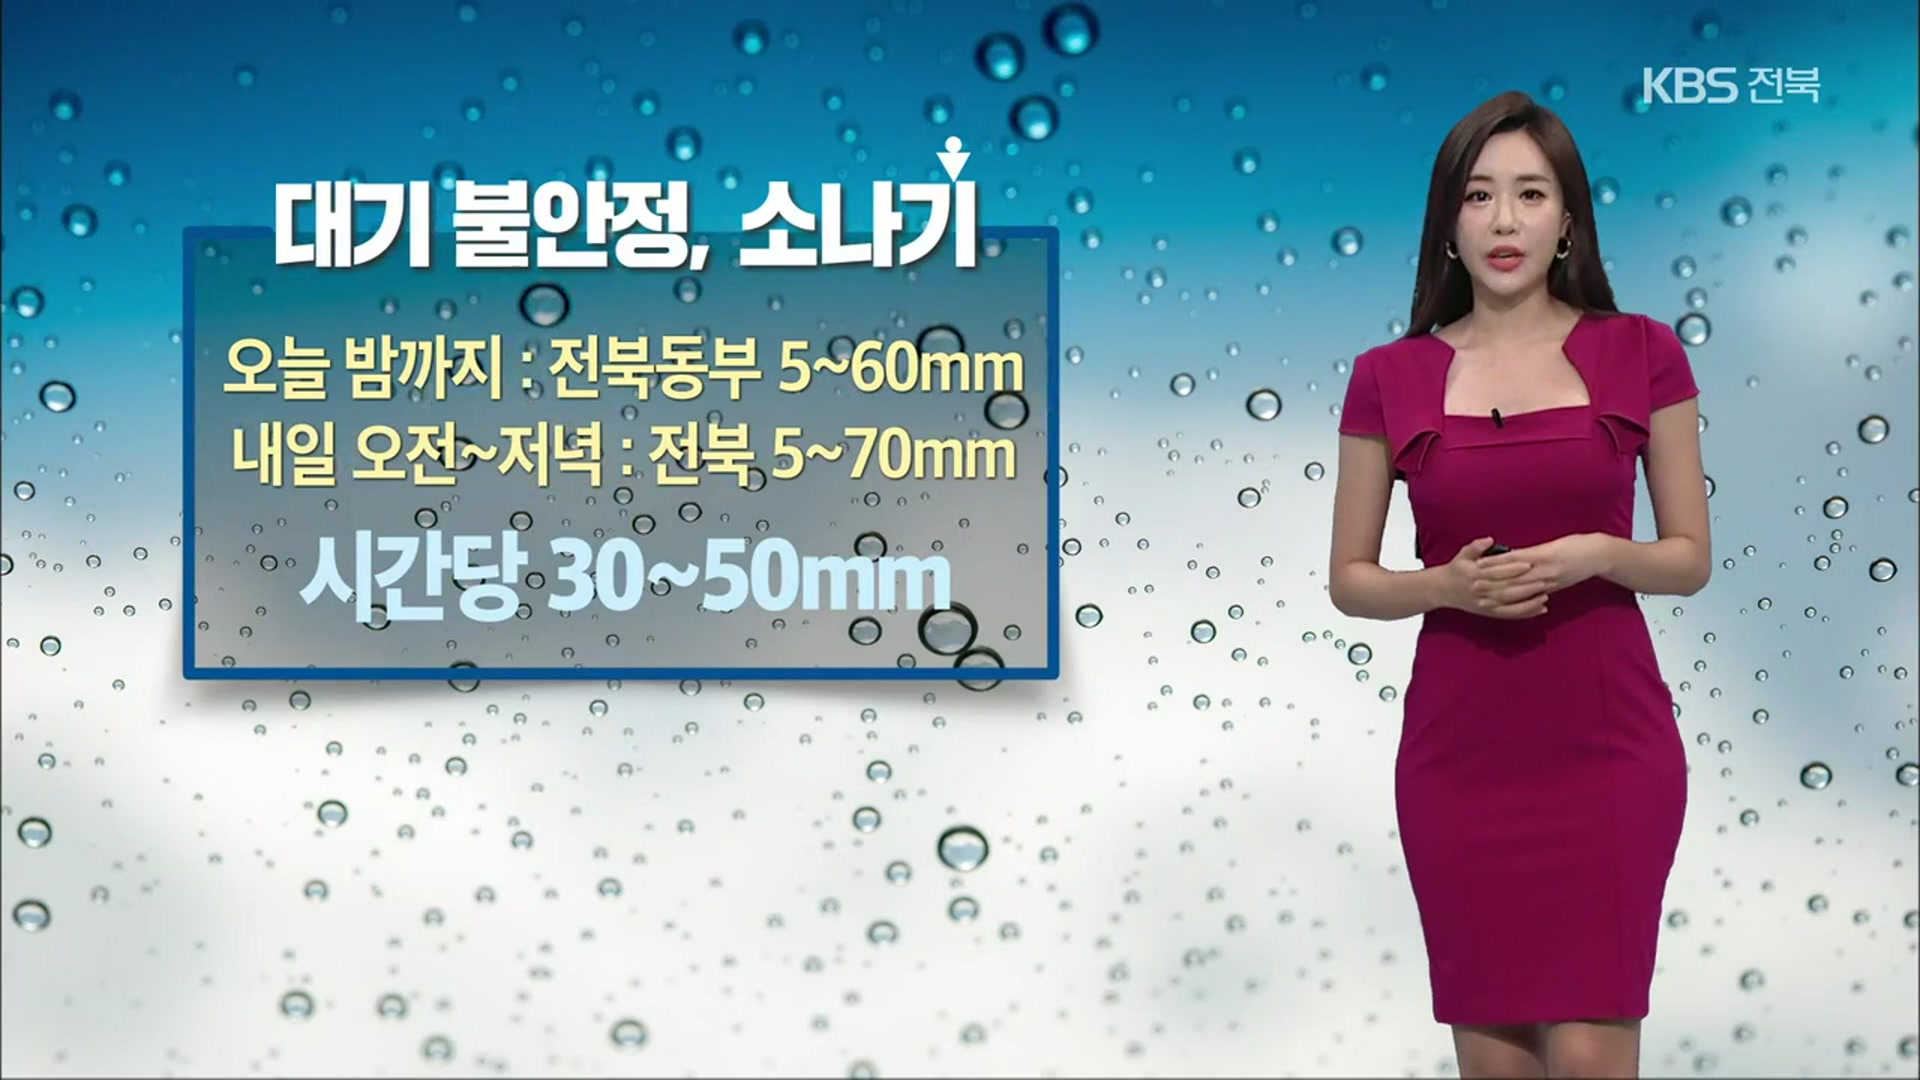 [날씨] 전북 대부분 내일 ‘강한 소나기’…폭염도 계속